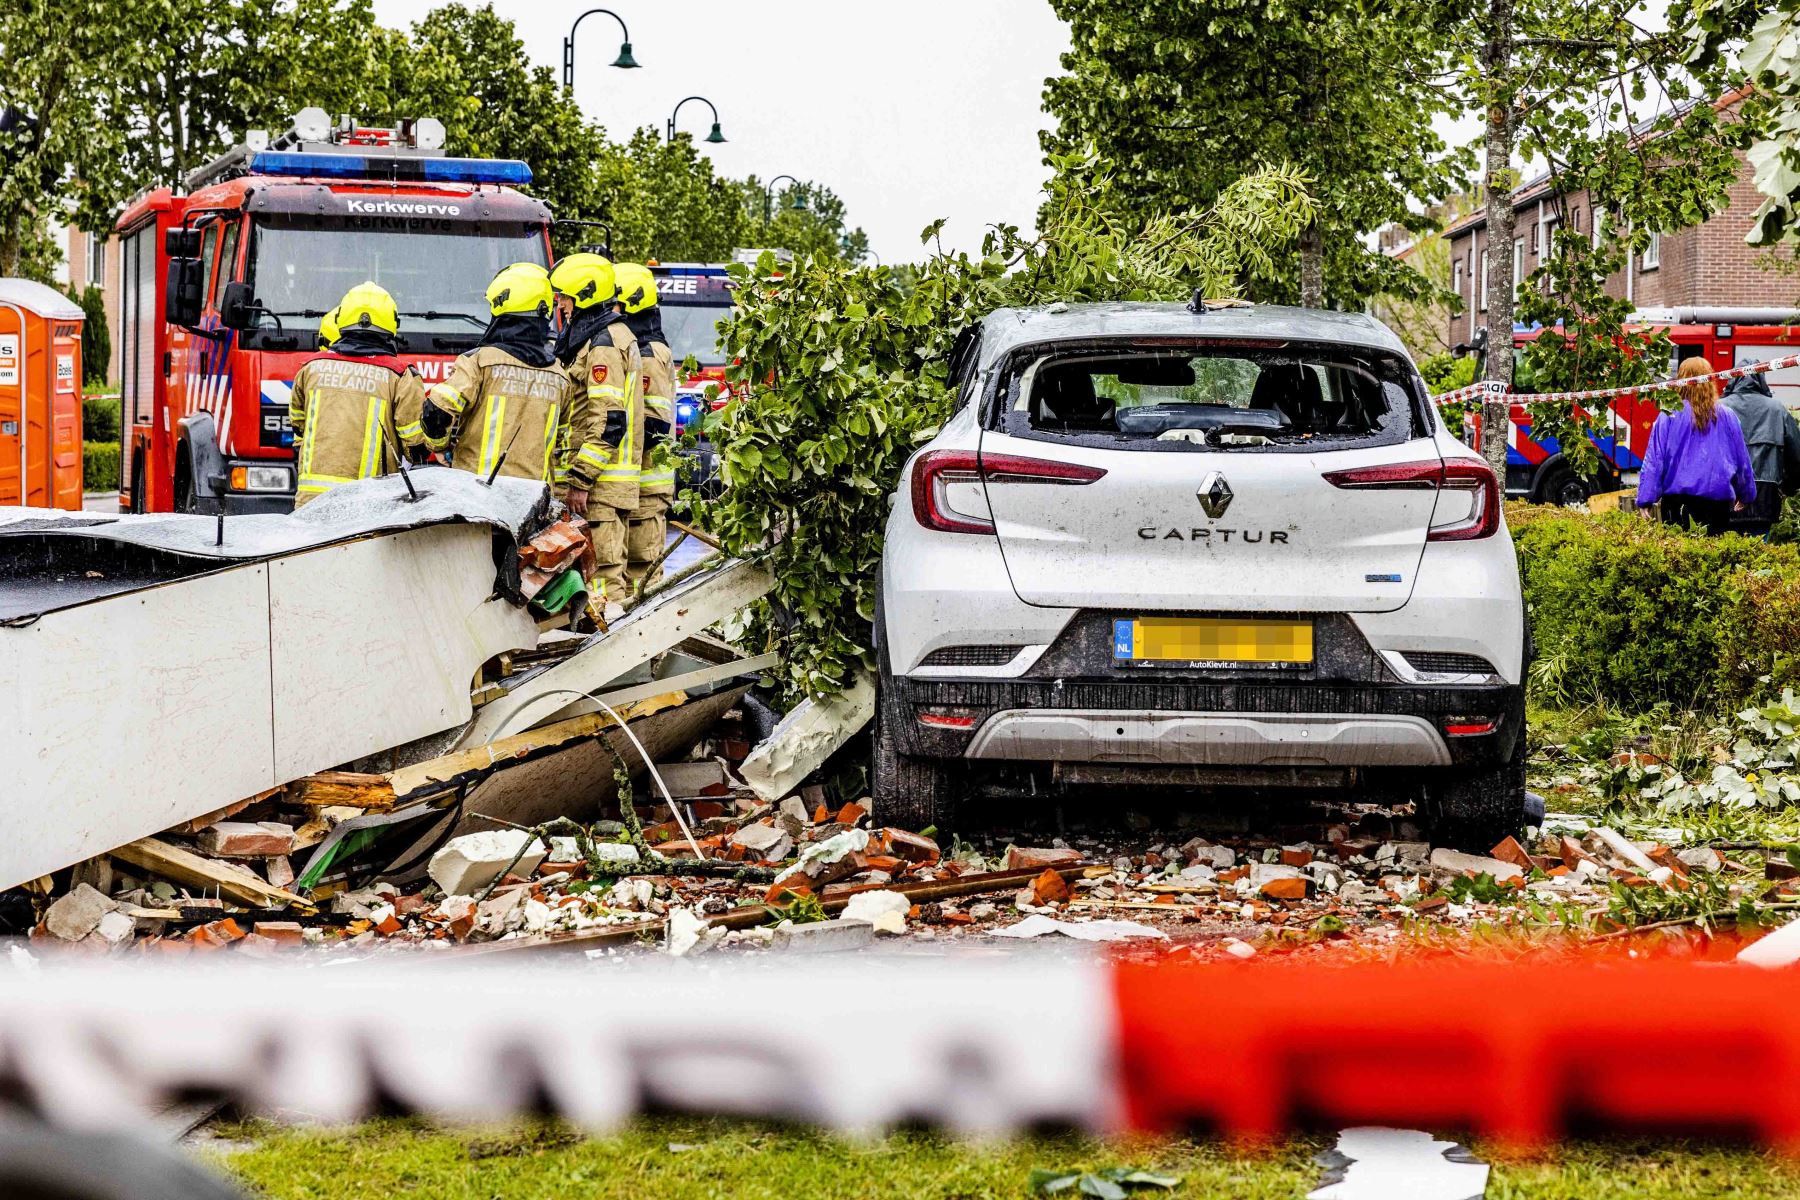 Según la junta de seguridad de Zelanda, los servicios de emergencia todavía están evaluando el tamaño total de los daños, que son “considerables” en varias calles de la localidad de Zierikzee. Foto: AFP